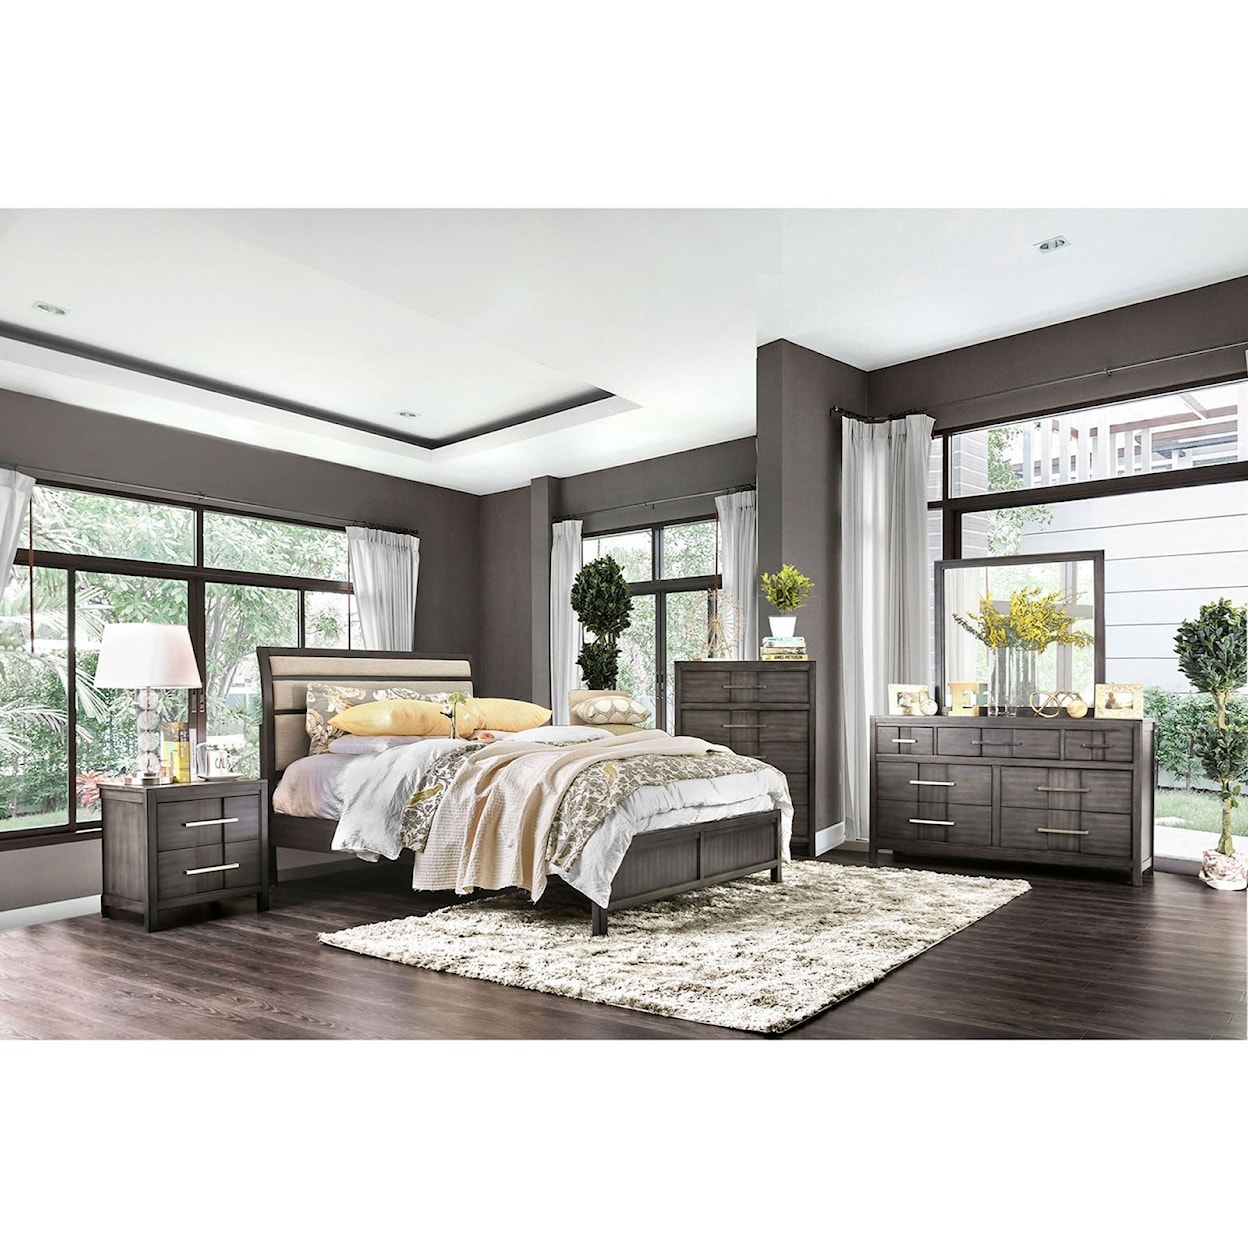 Furniture of America Berenice Queen Bedroom Group